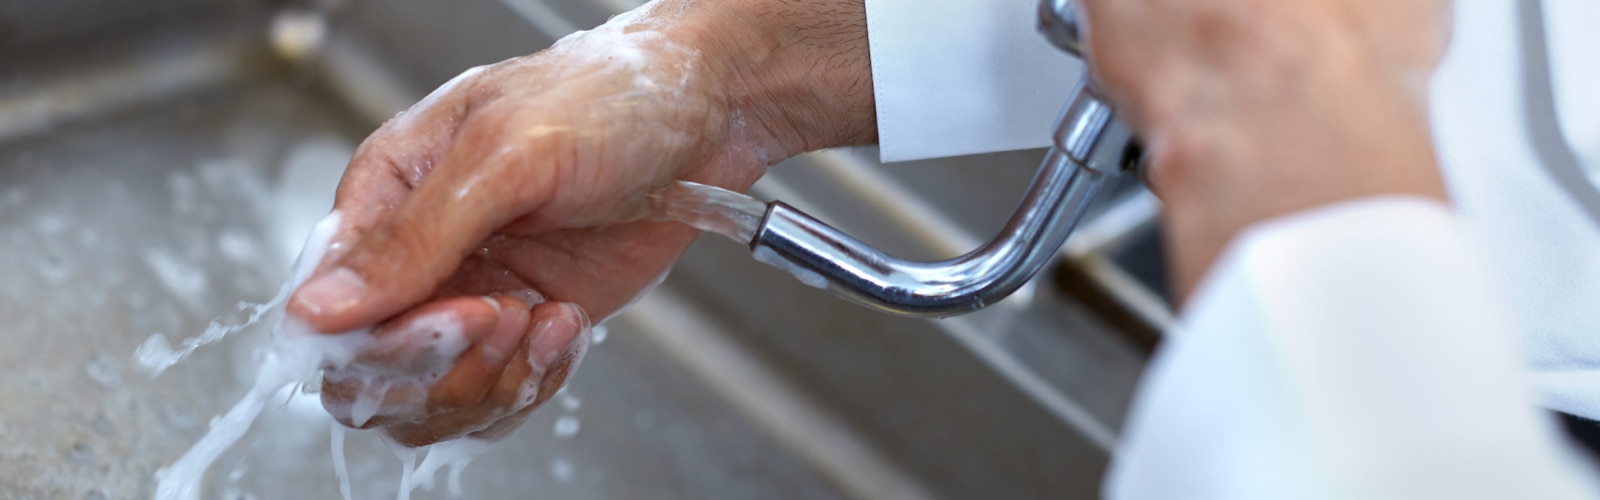 Lavado de manos en restaurantes y servicios alimentarios